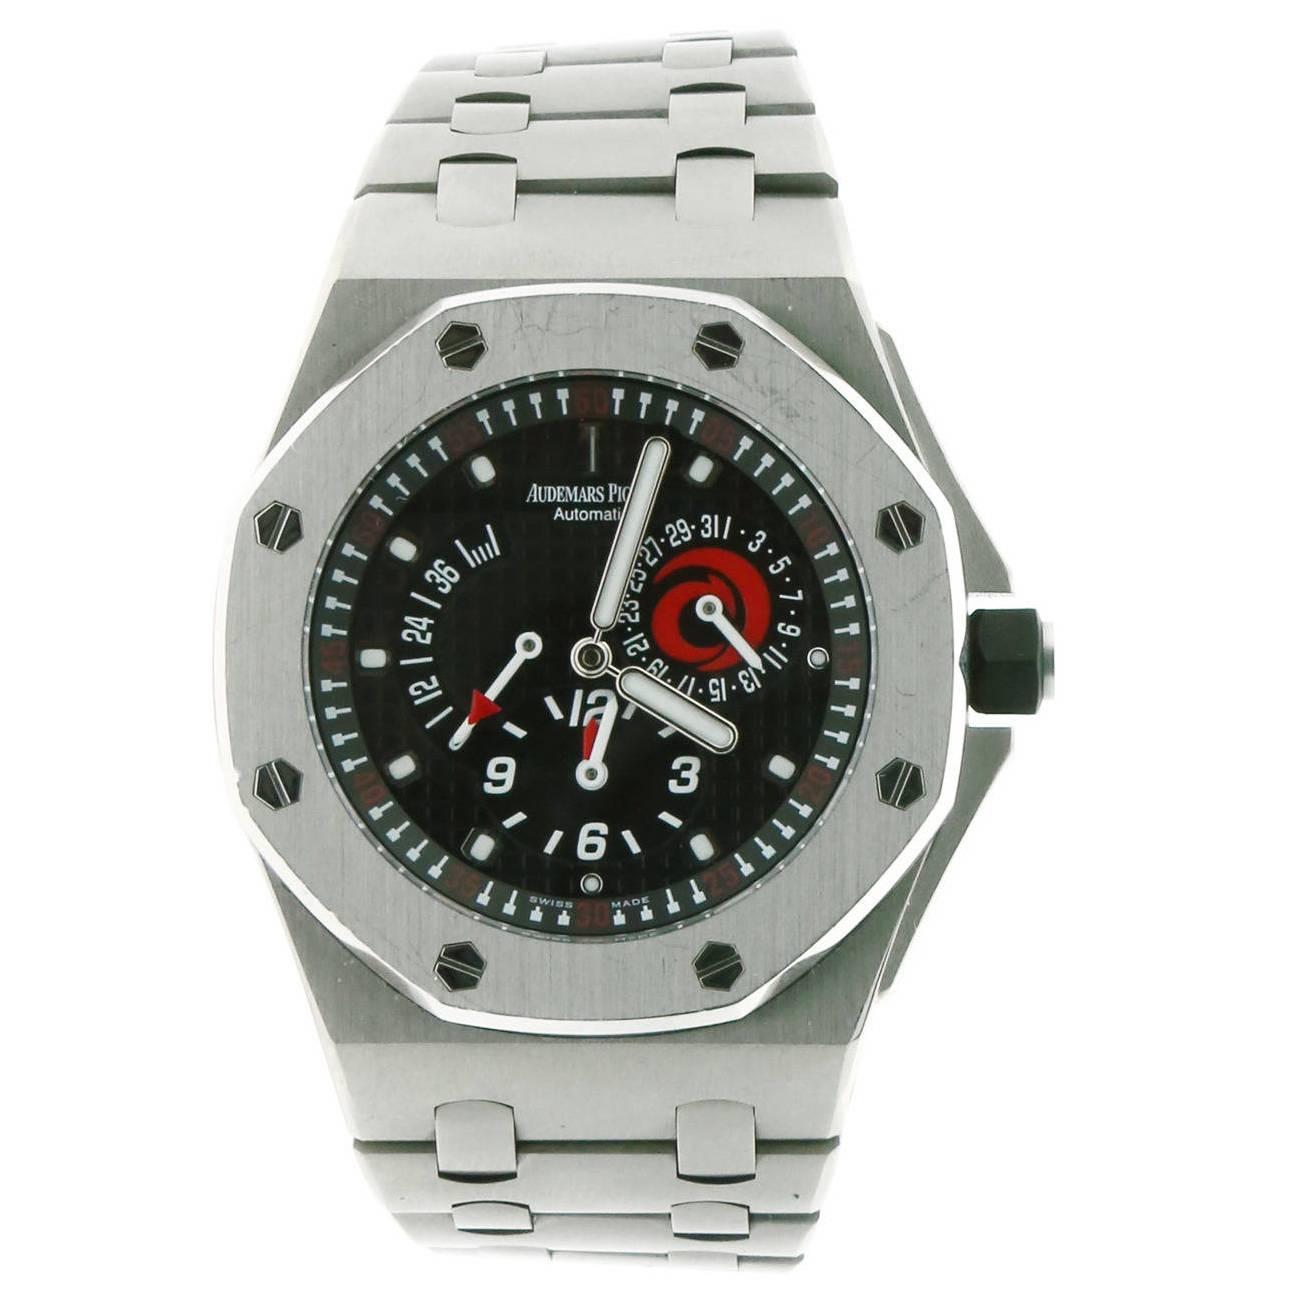 Audemars Piguet Titanium Limited Edition Alinghi Wristwatch